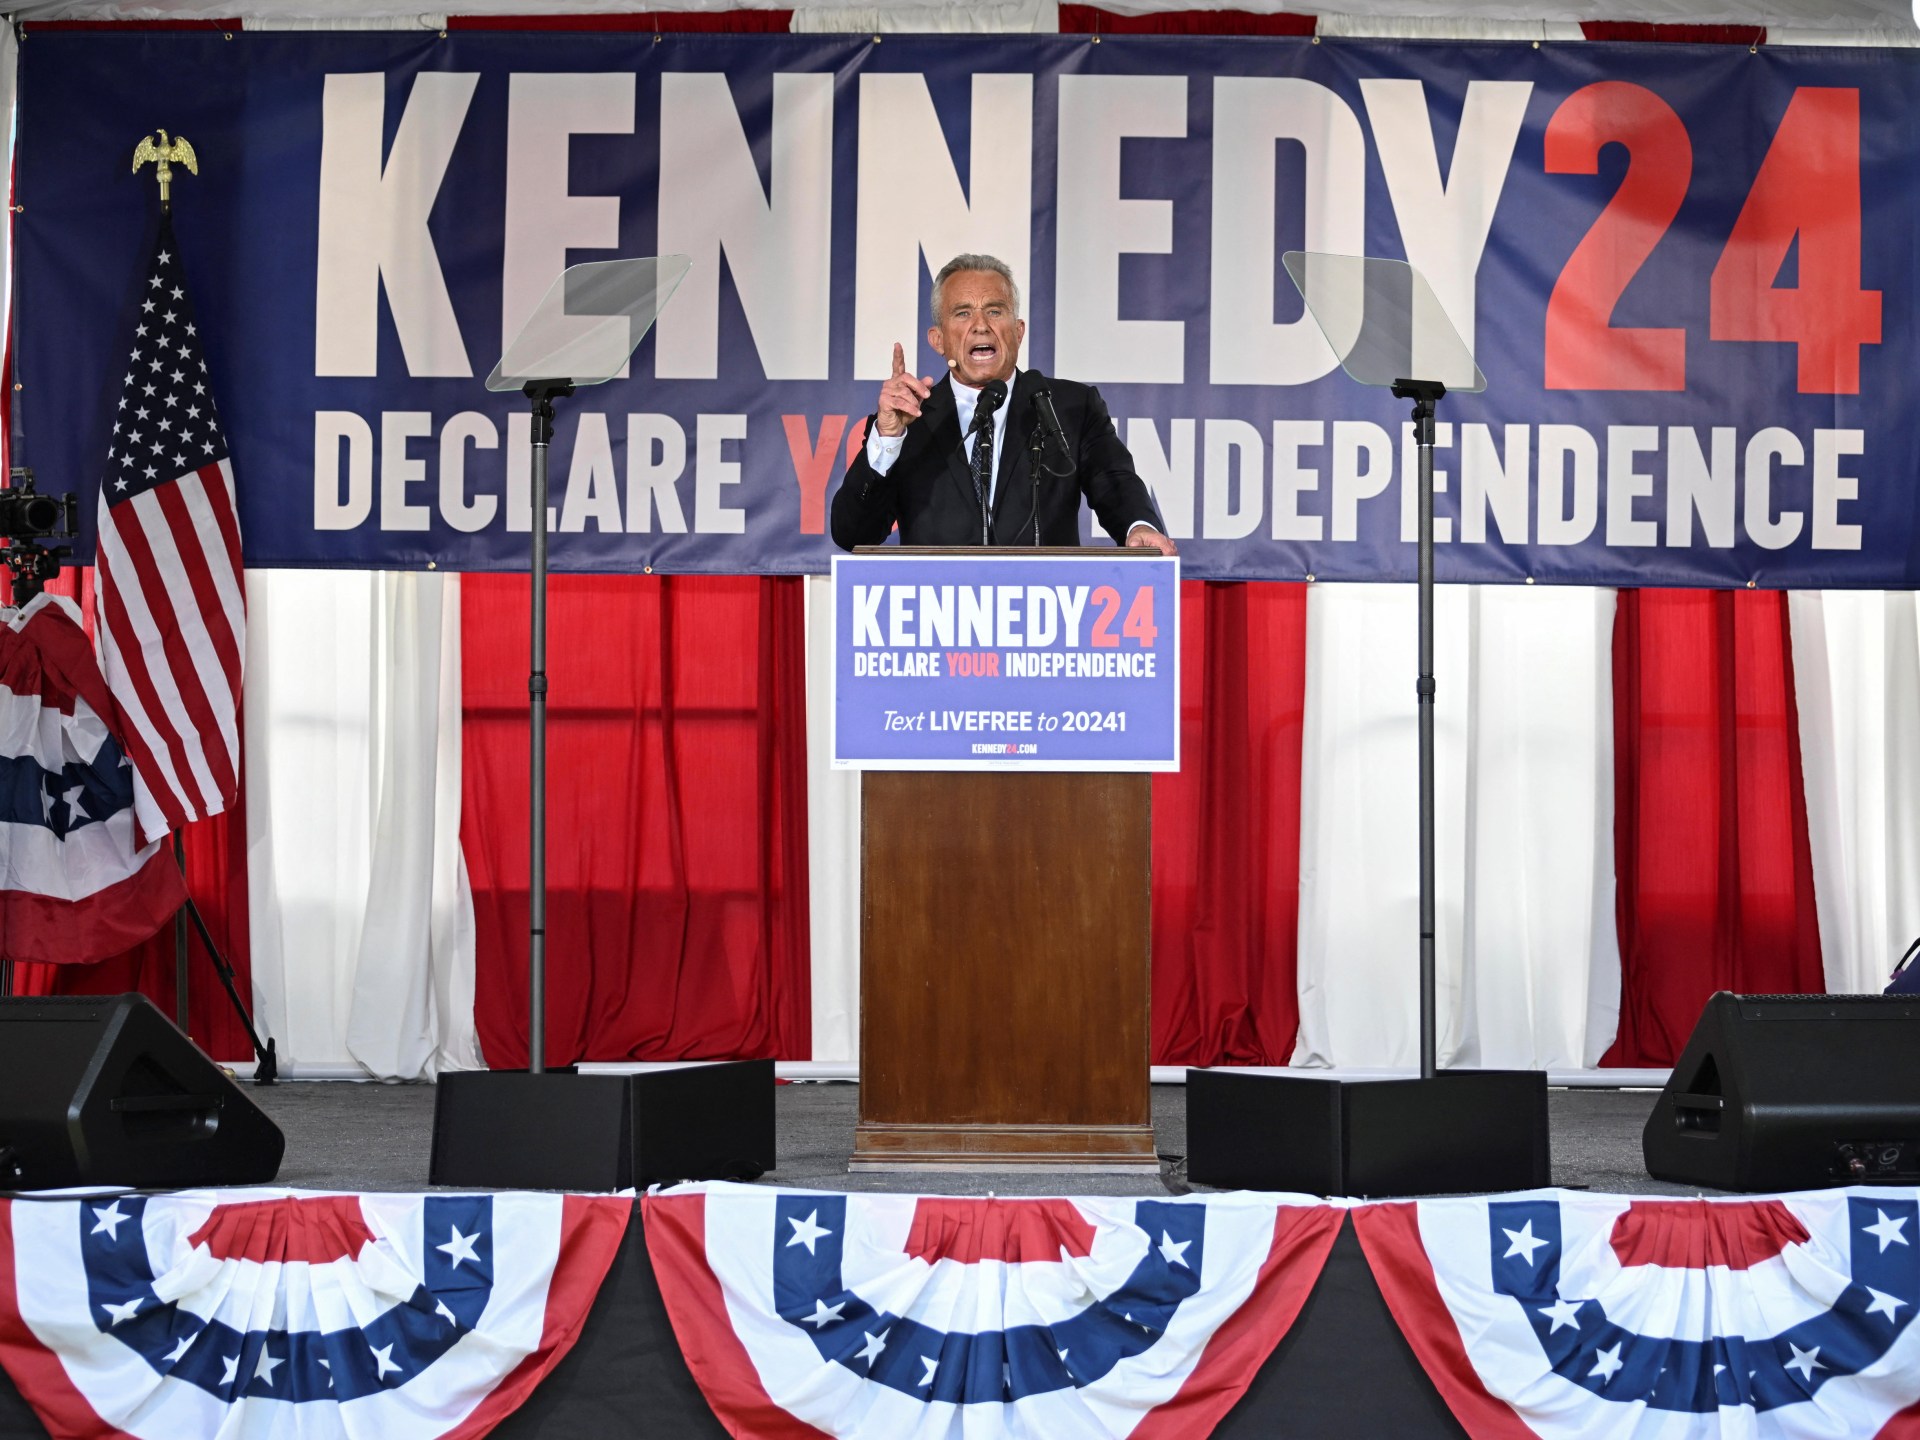 هل يقرر روبرت كينيدي جونيور نتائج انتخابات أميركا؟ | سياسة – البوكس نيوز